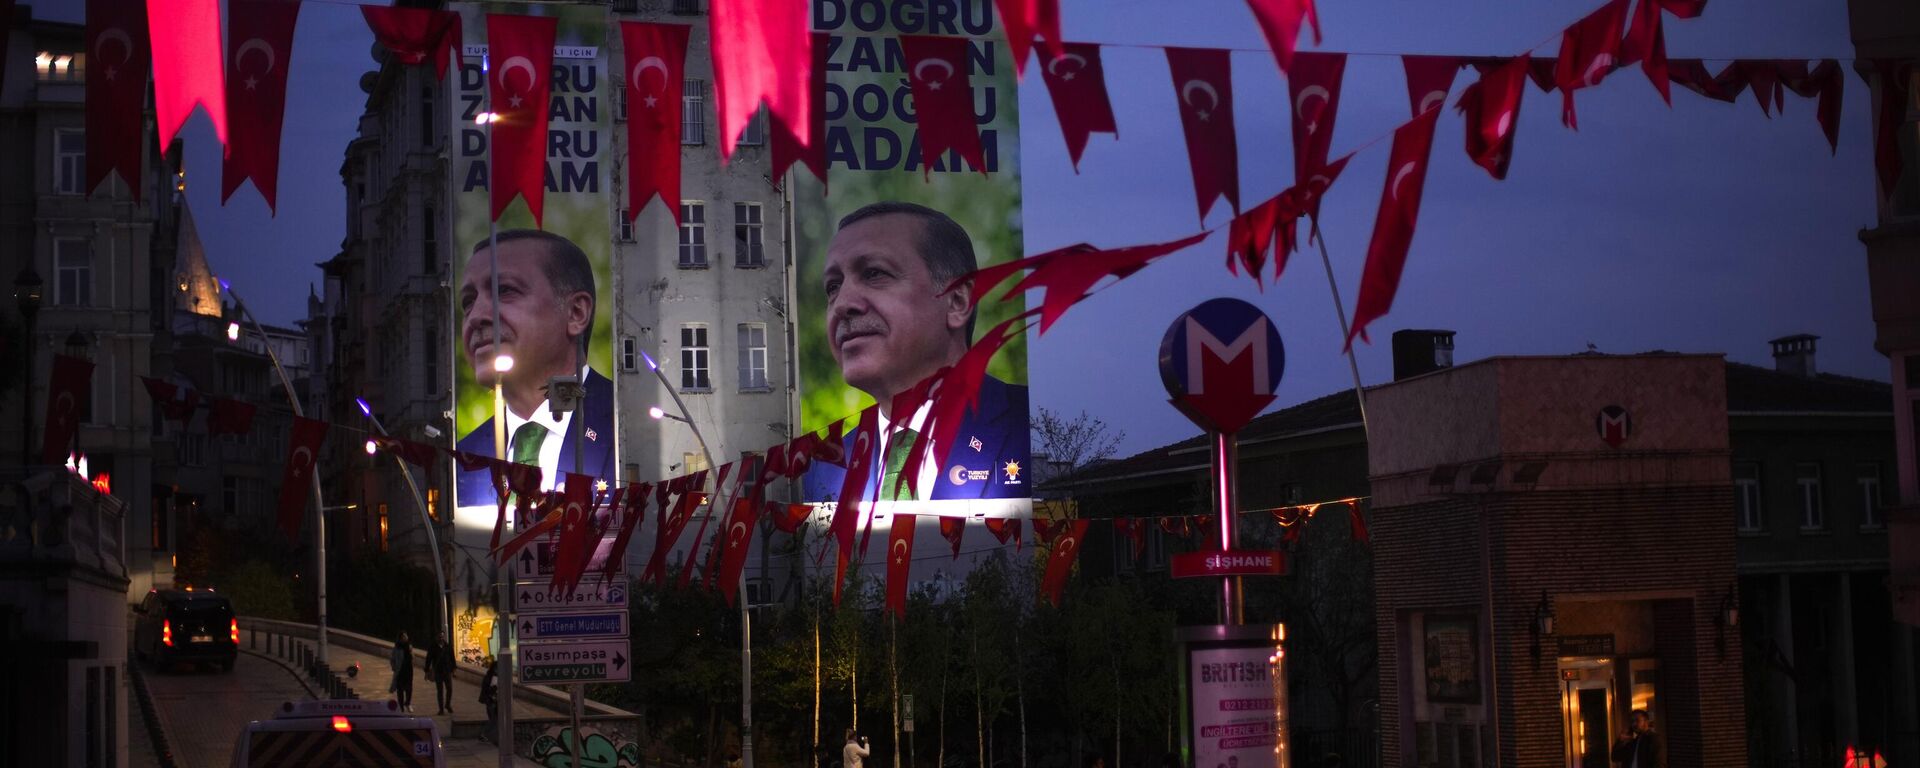 La gente pasa junto a vallas publicitarias en las que aparece el presidente turco y candidato presidencial de Alianza Popular, Recep Tayyip Erdogan, en Estambul - Sputnik Mundo, 1920, 11.05.2023